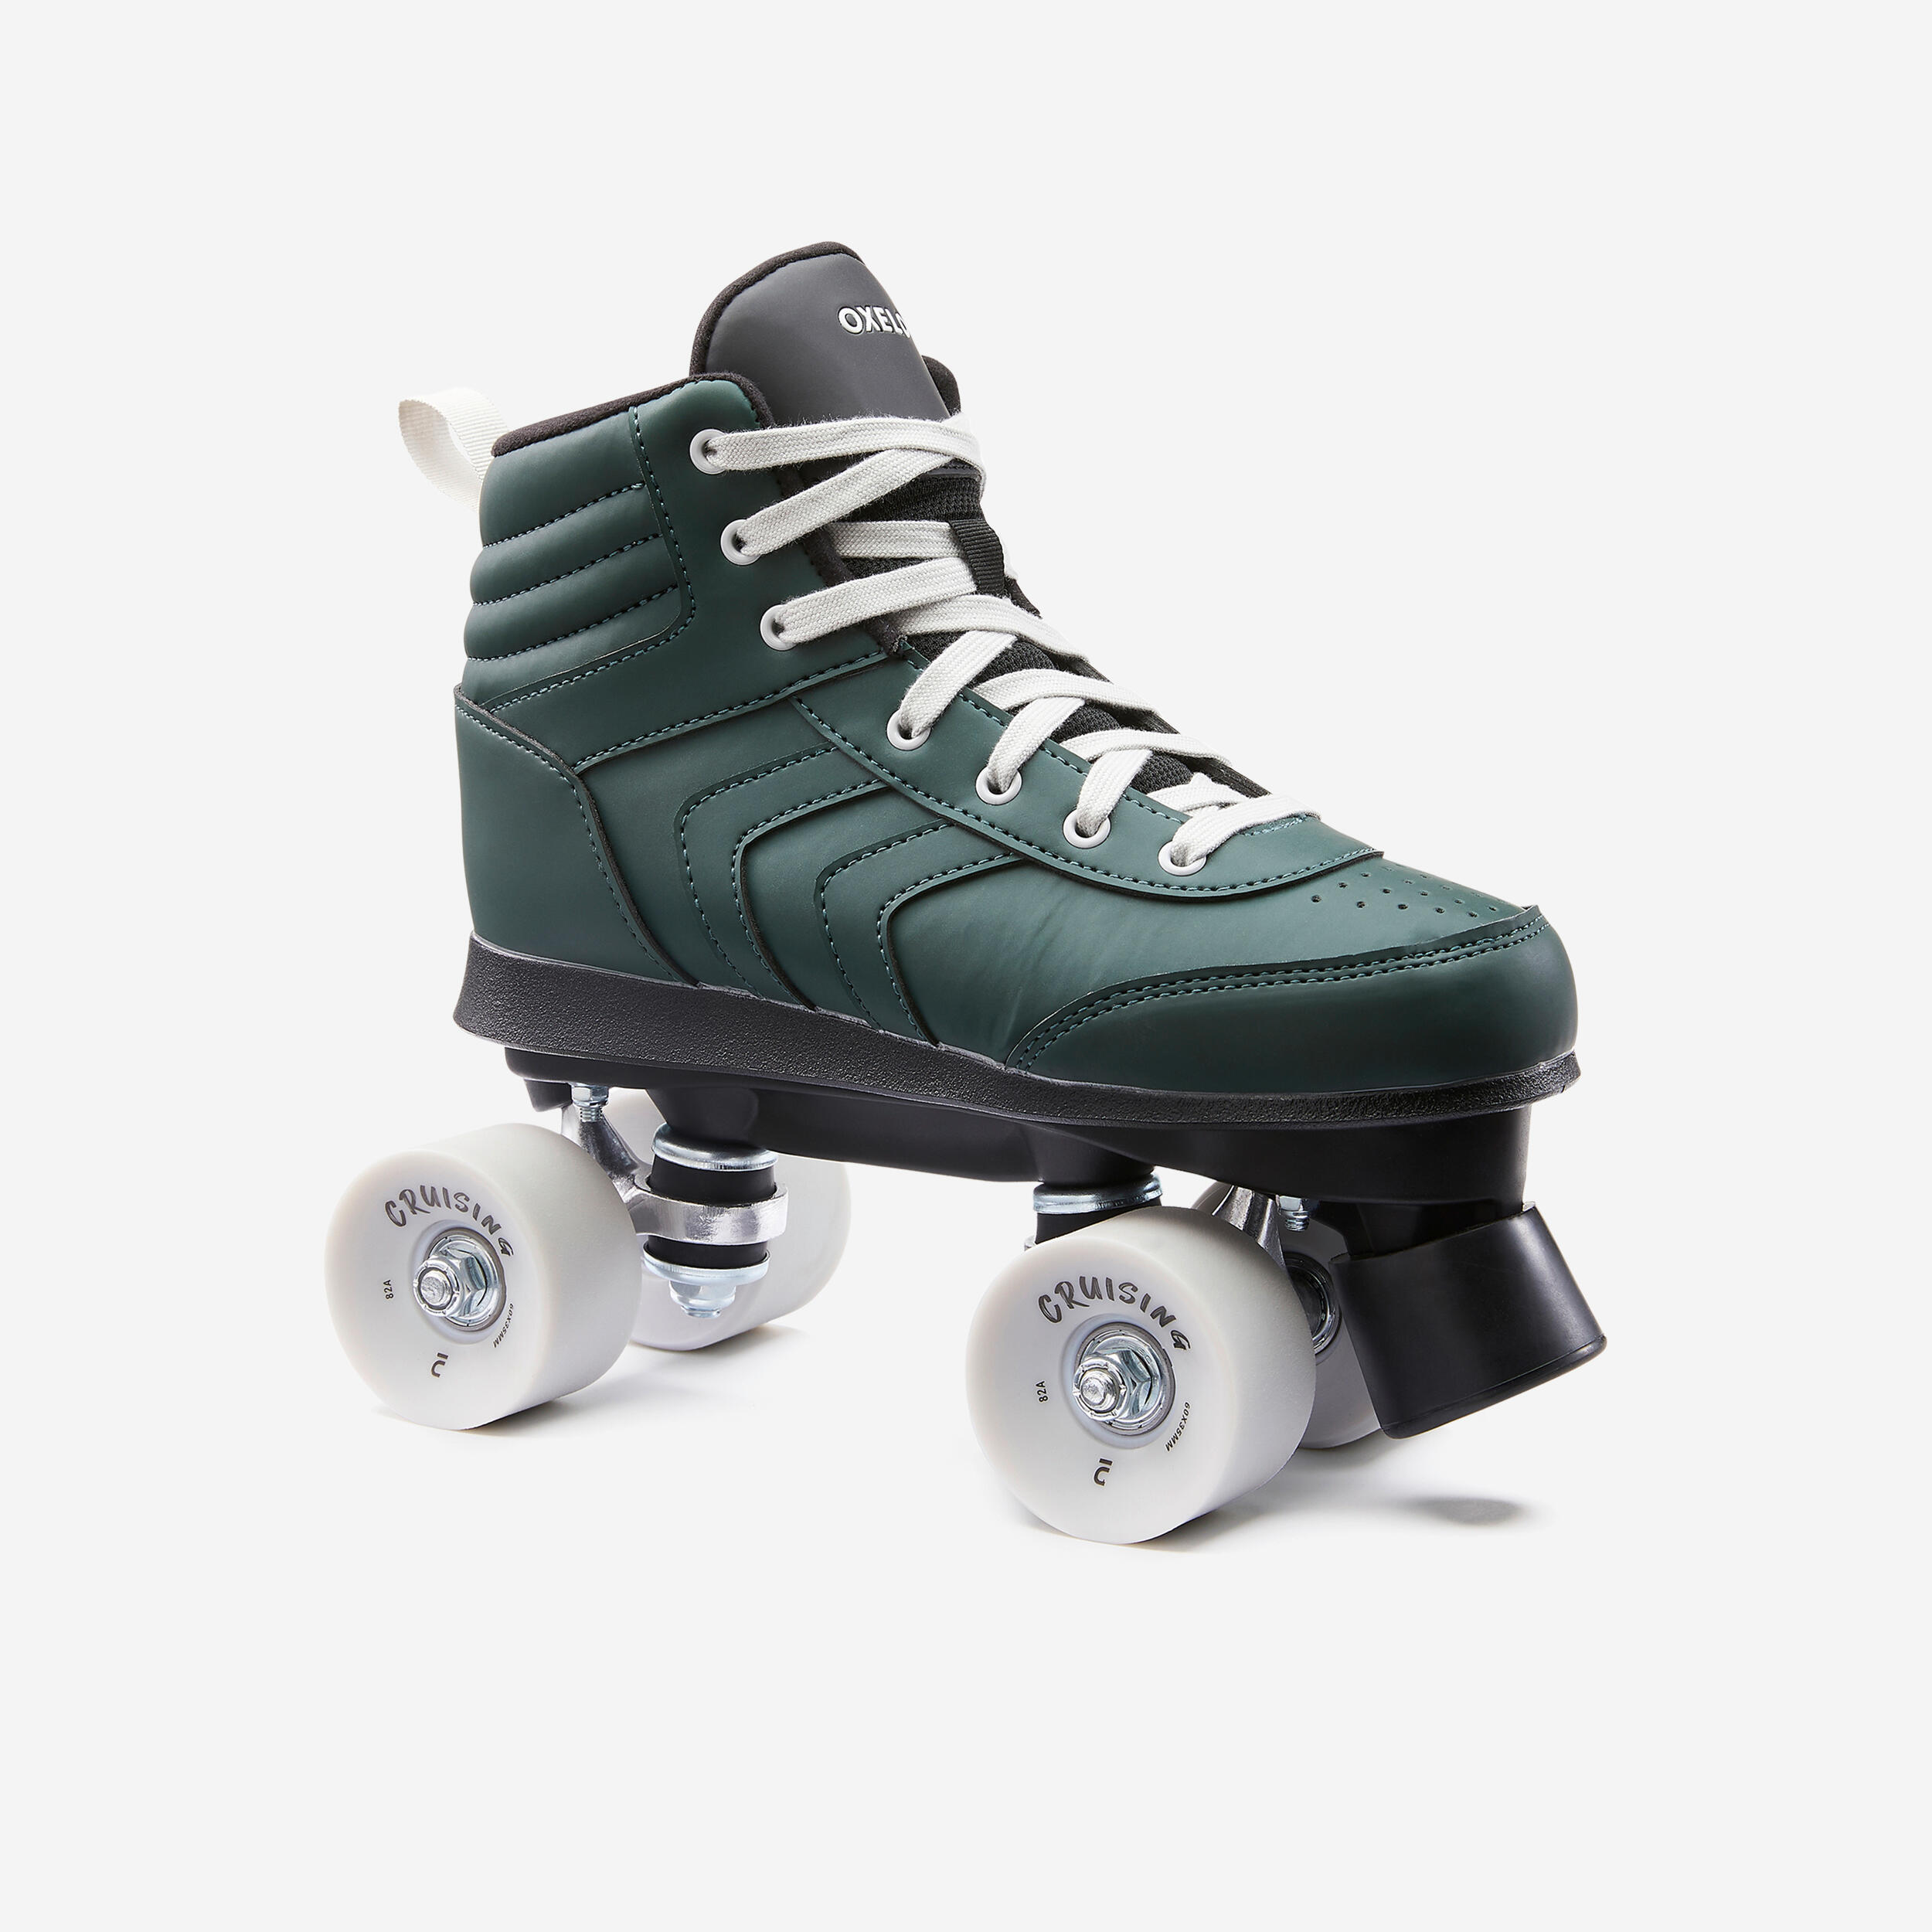 Adult Roller Skates Quad 100 - Green 1/10